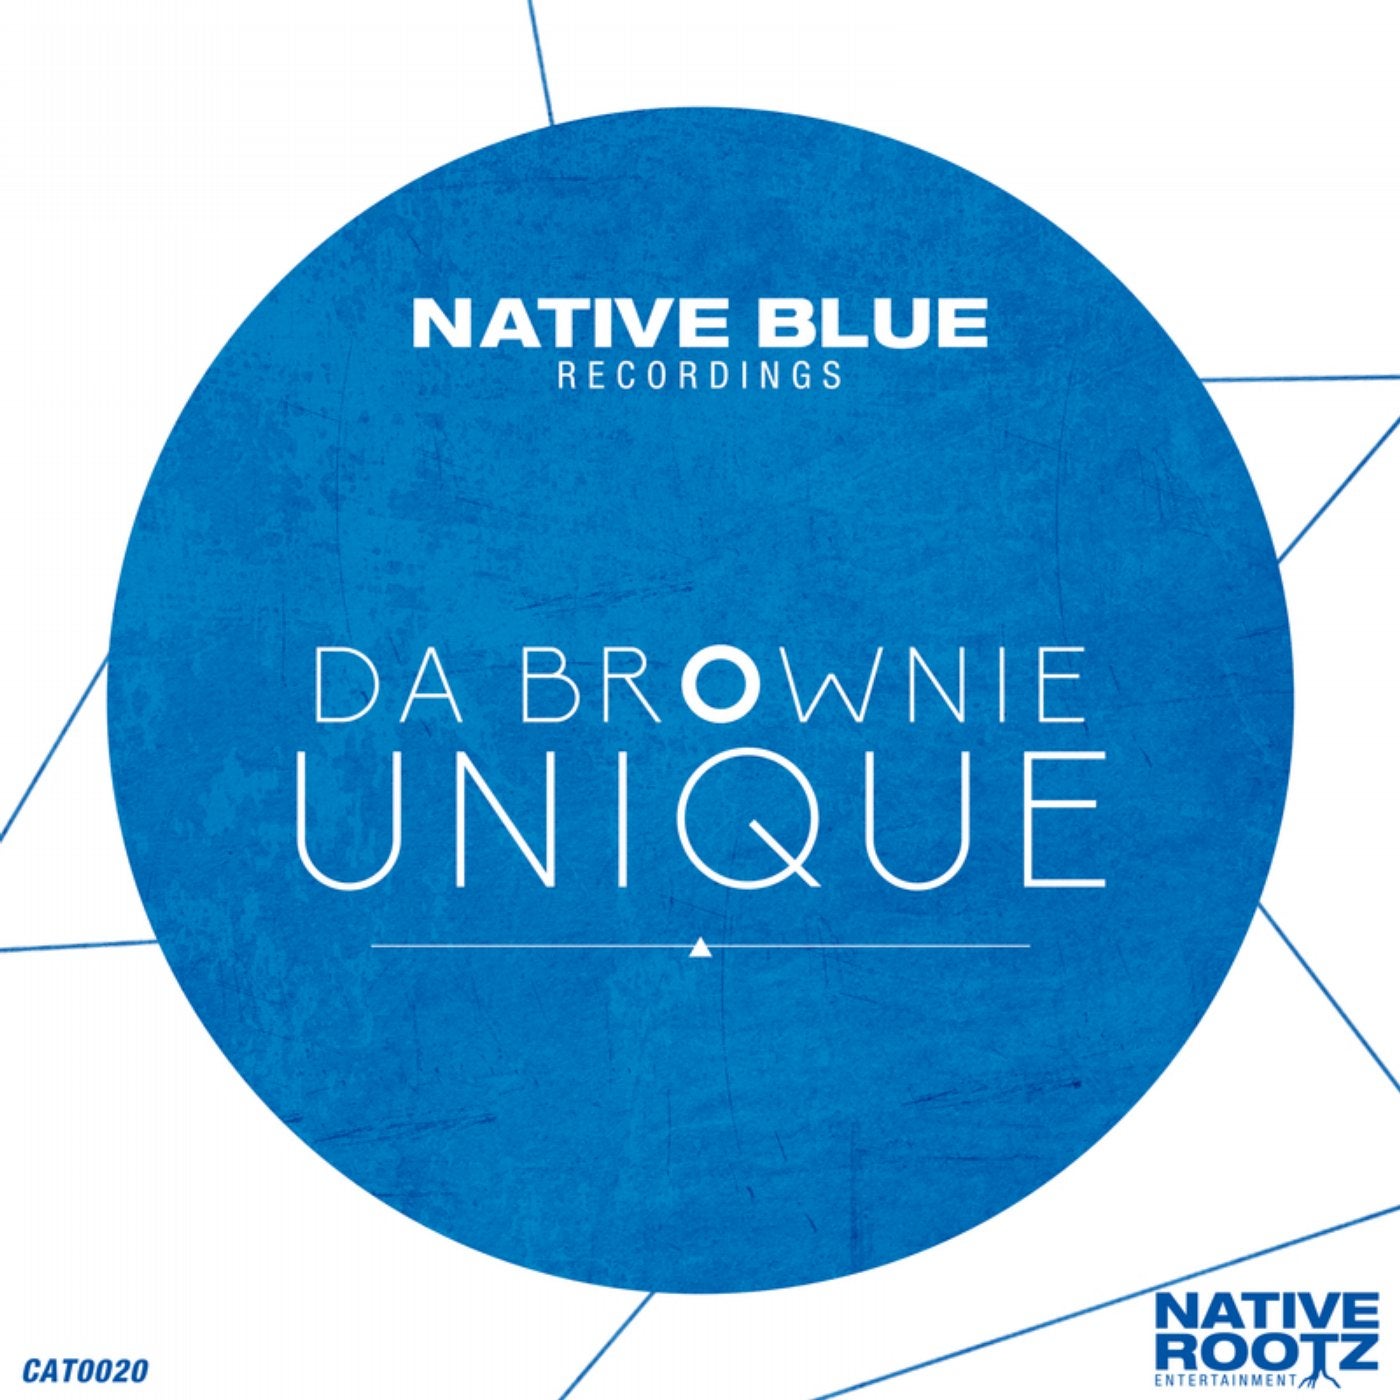 Текст песни unique. Native Blue. Nation in Blue. Blue native корм. Песня unique.